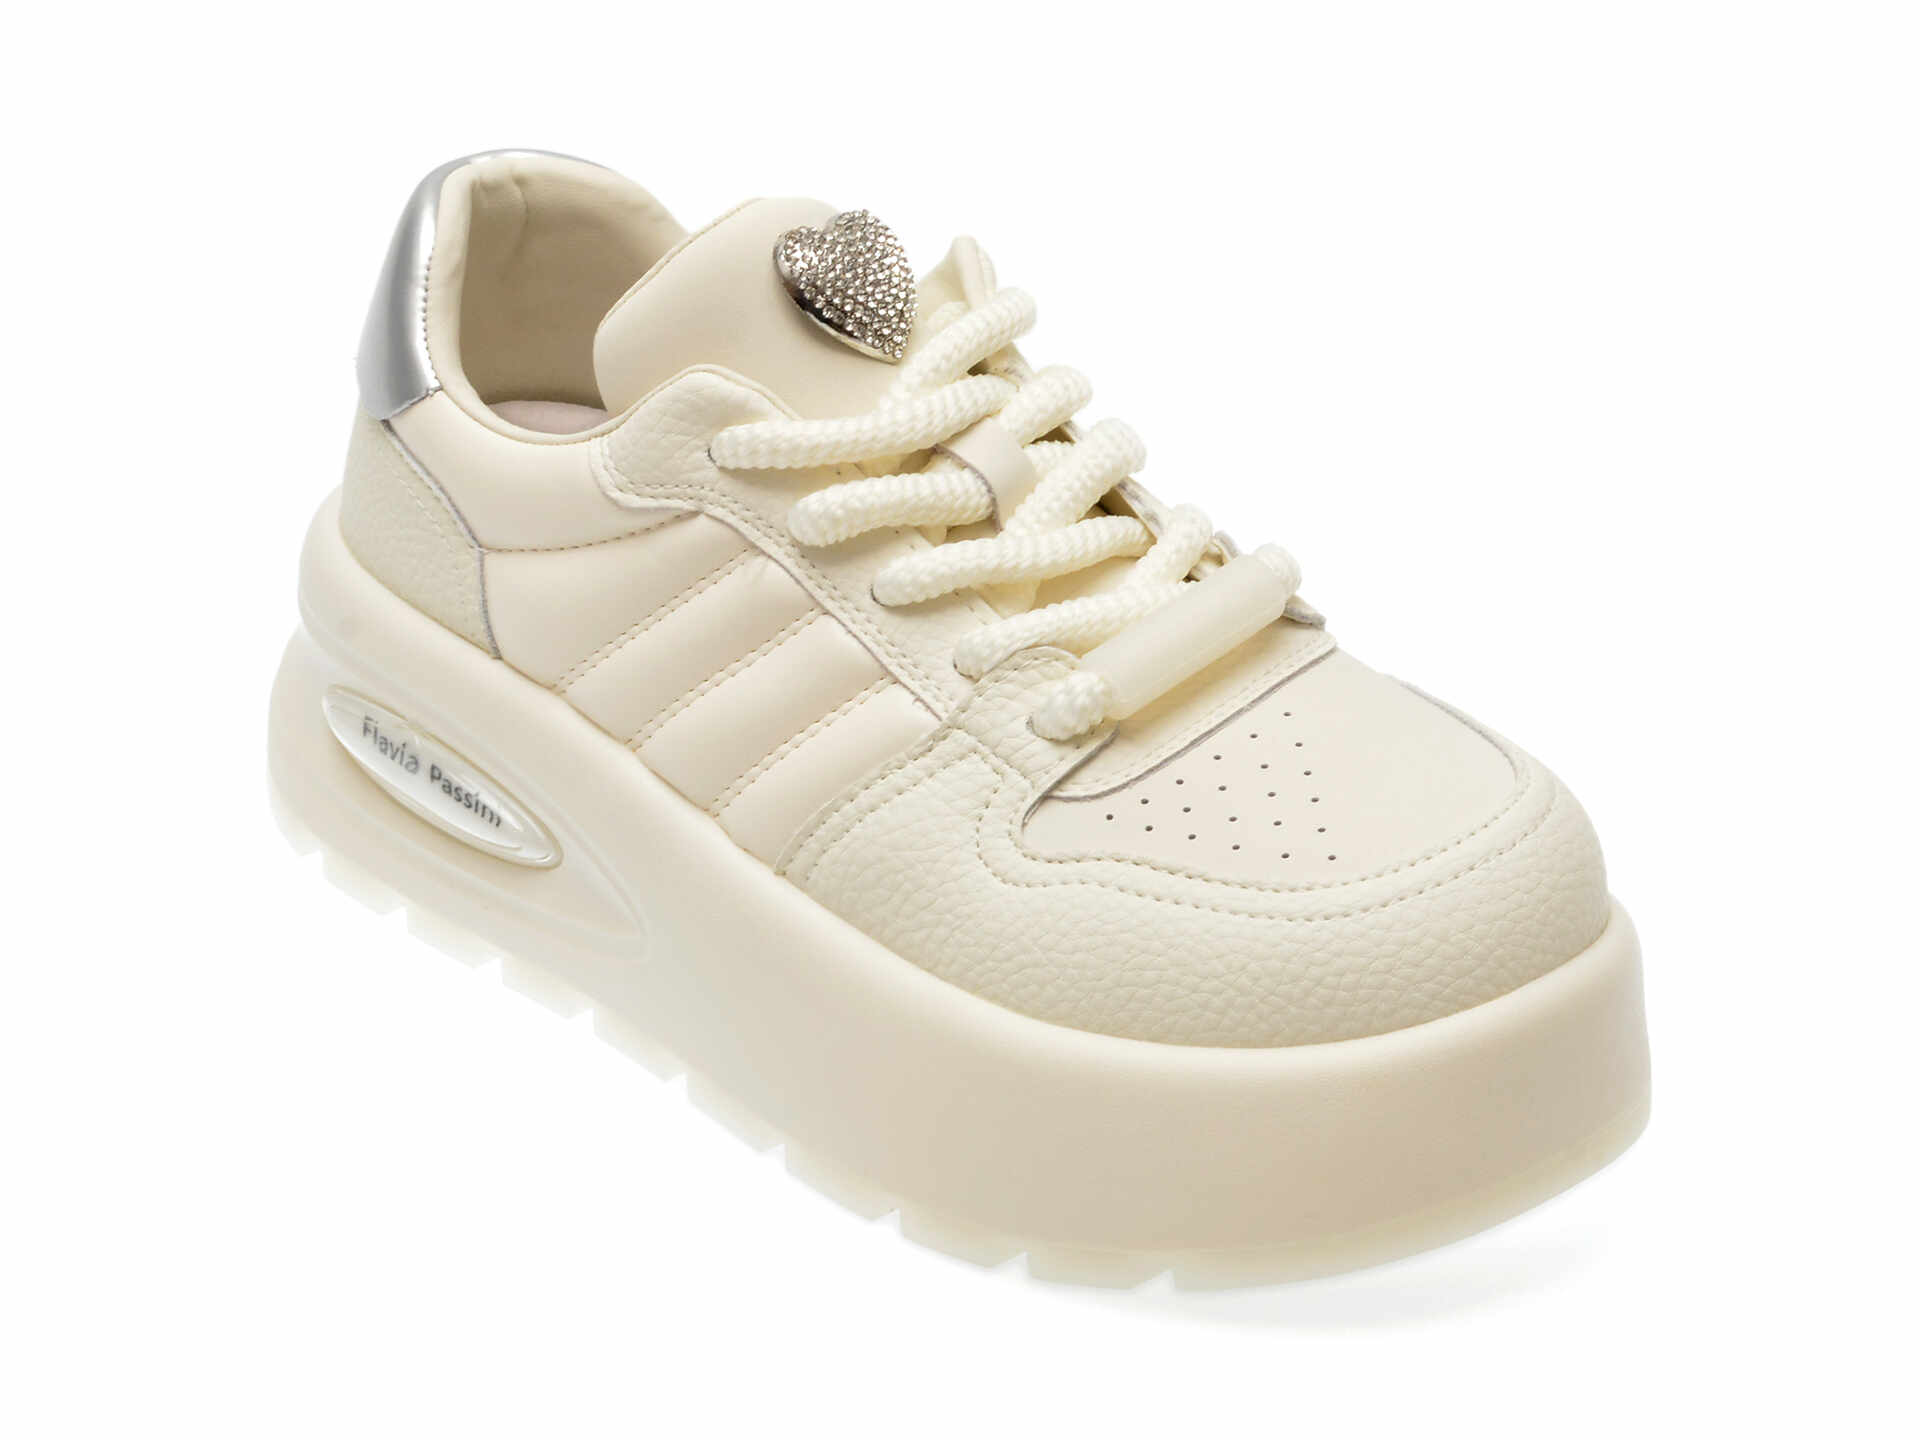 Pantofi casual FLAVIA PASSINI albi, 31C03, din piele ecologica